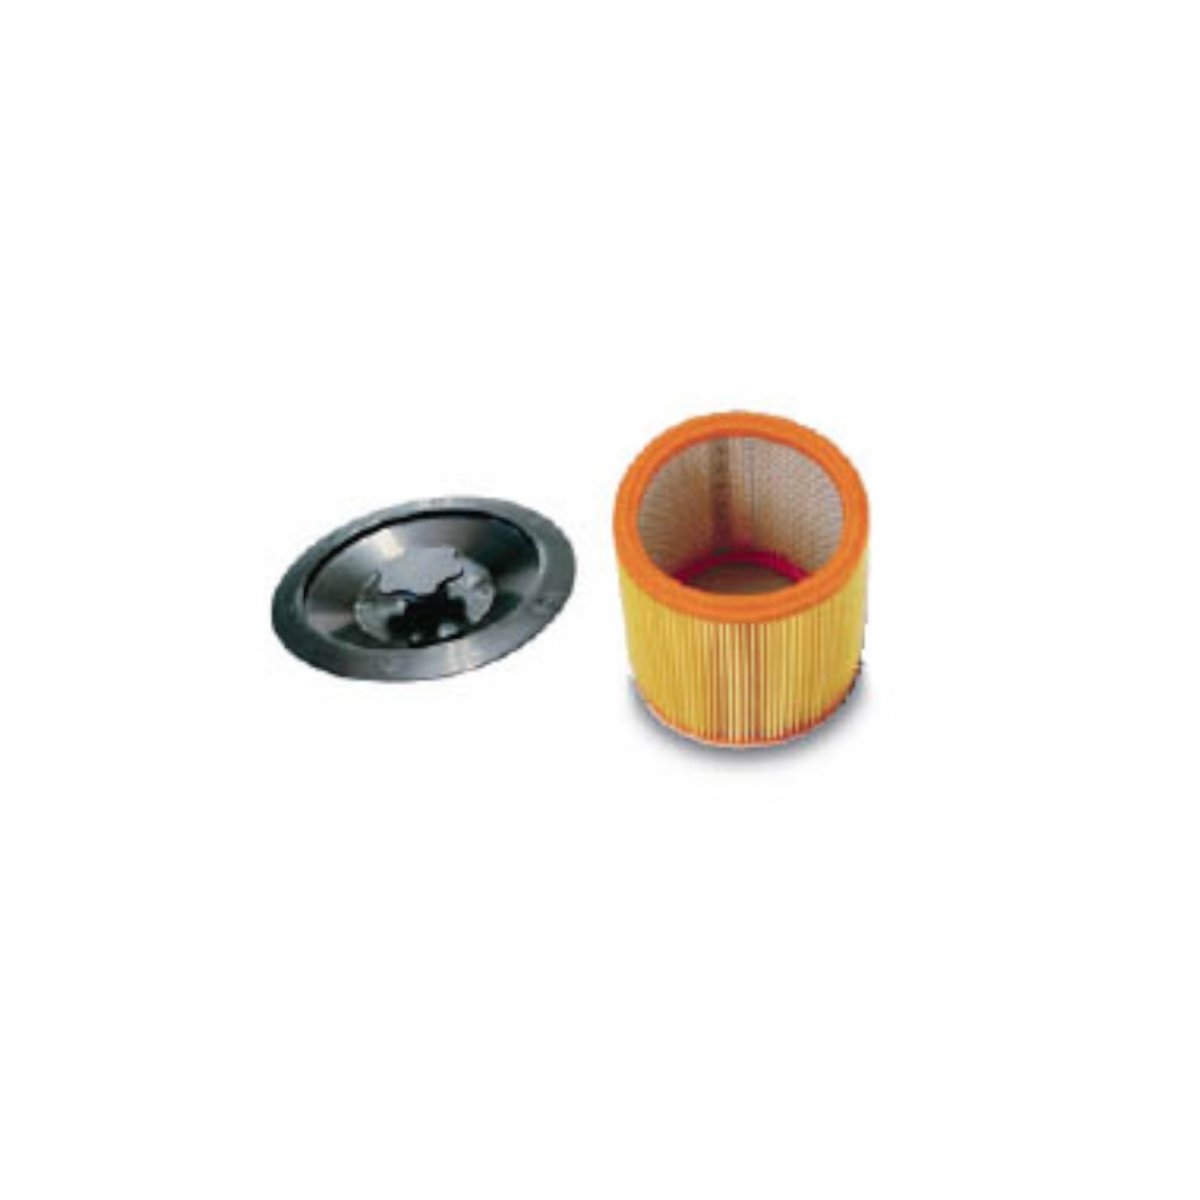 Papierowy filtr + pierścień do mocowania do odkurzaczy Portotecnica Topper 2/78 W&D oraz Topper 3/78 W&D DFS Pureco